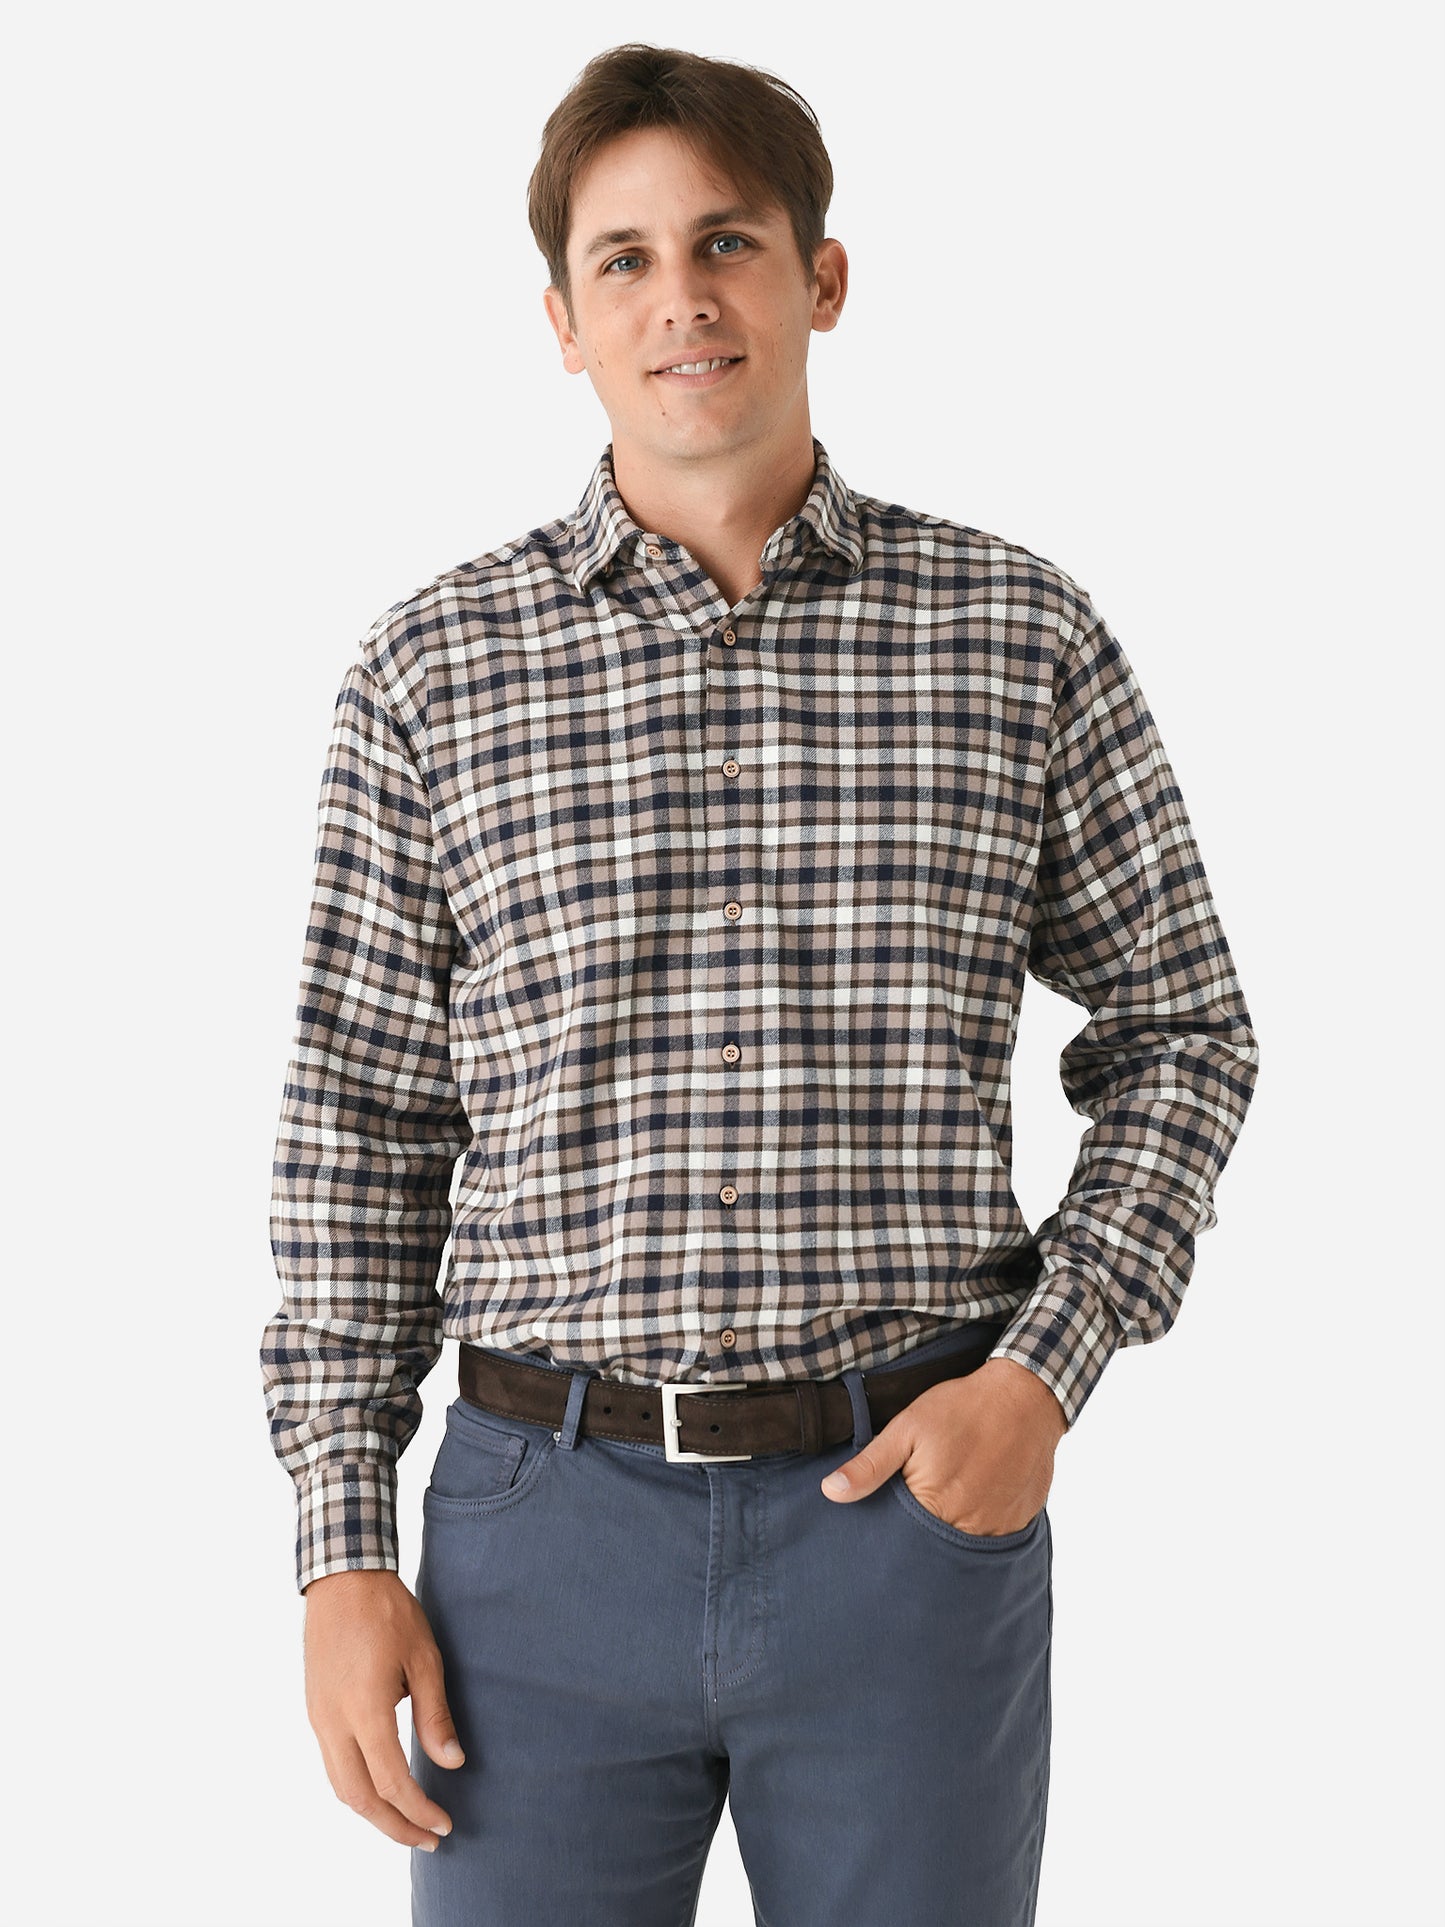 Miller Westby Men's Oneida Button-Down Shirt